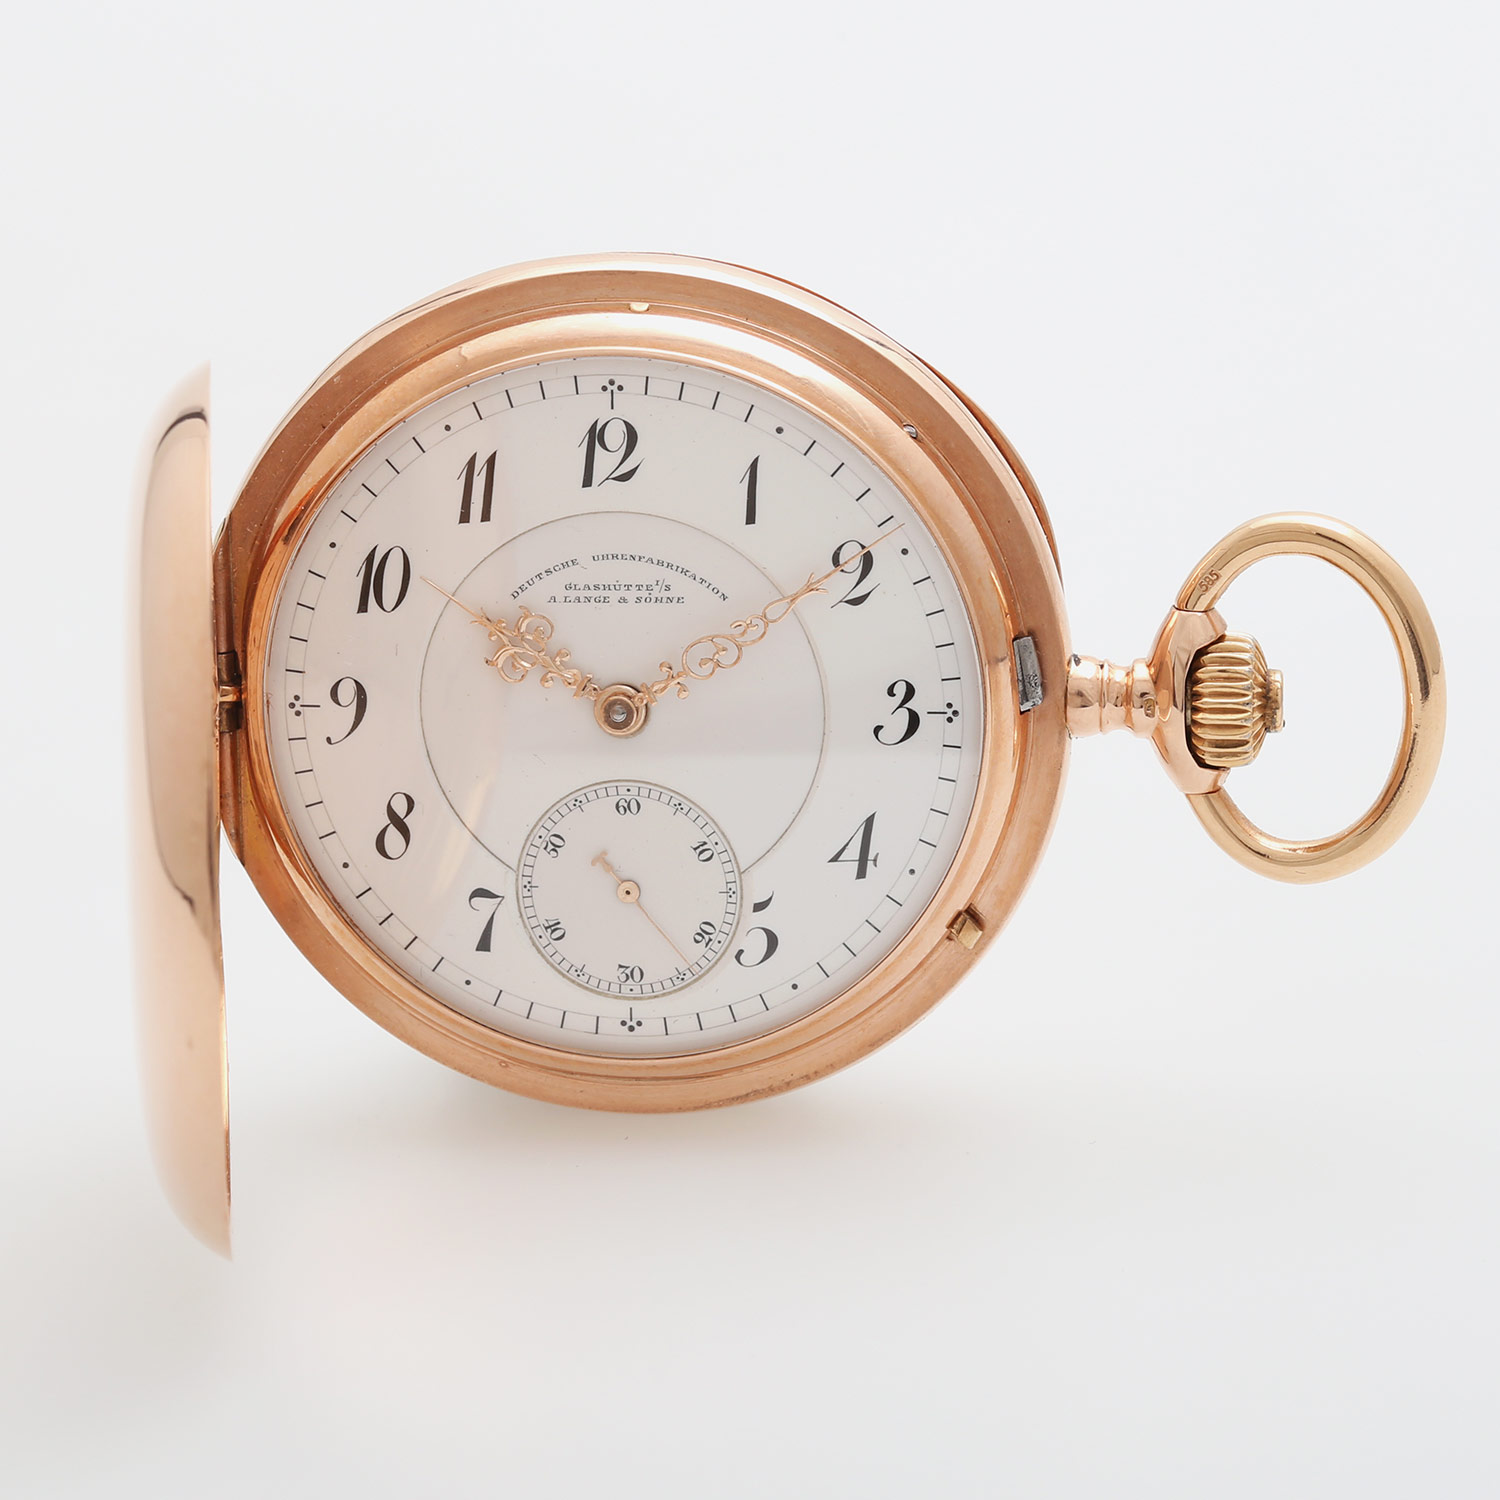 DUF (Deutsche Uhrenfabrikation) A. LANGE & SÖHNE Taschenuhr, Savonette, um 1898/1900, Gehäuse Rosé-